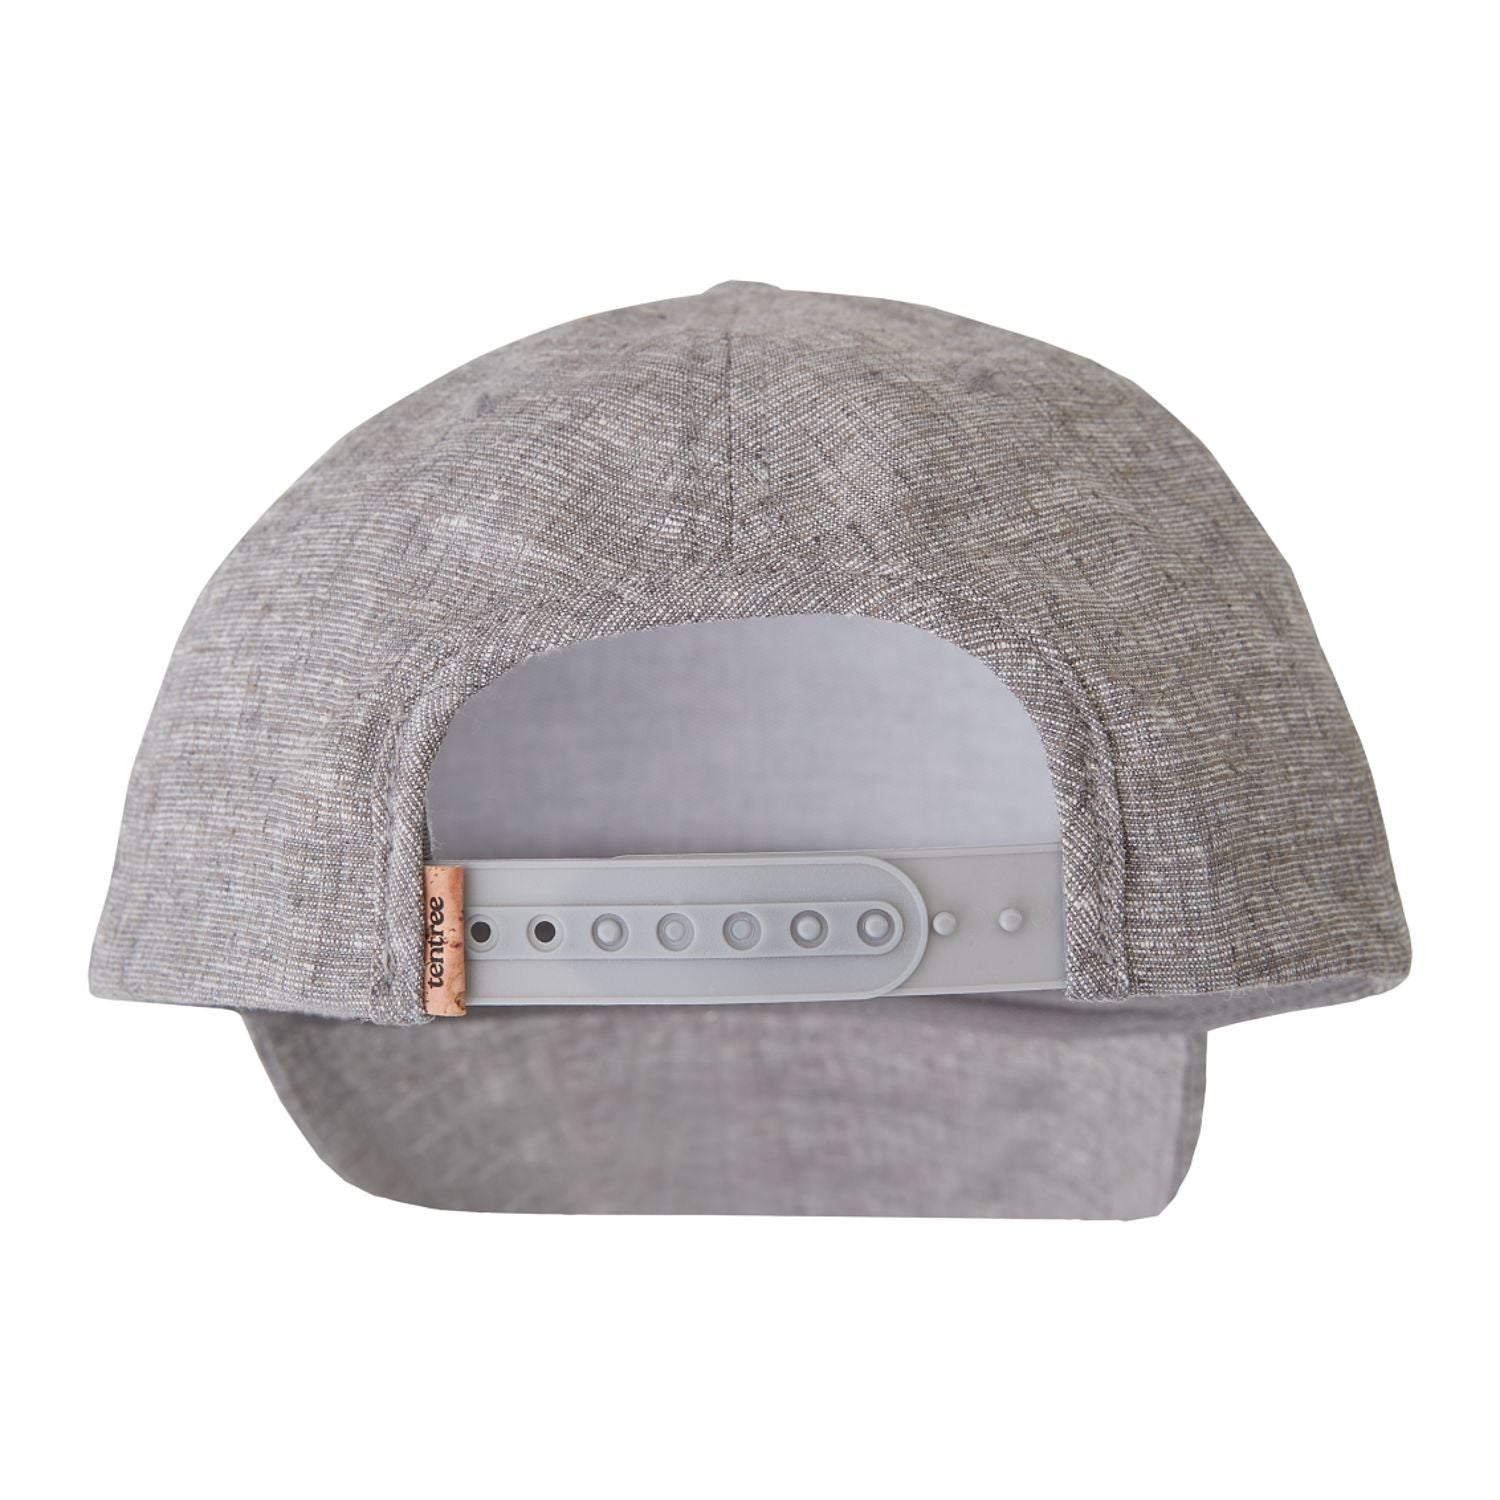 Customizable Tentree basic hemp Altitude hat in grey.